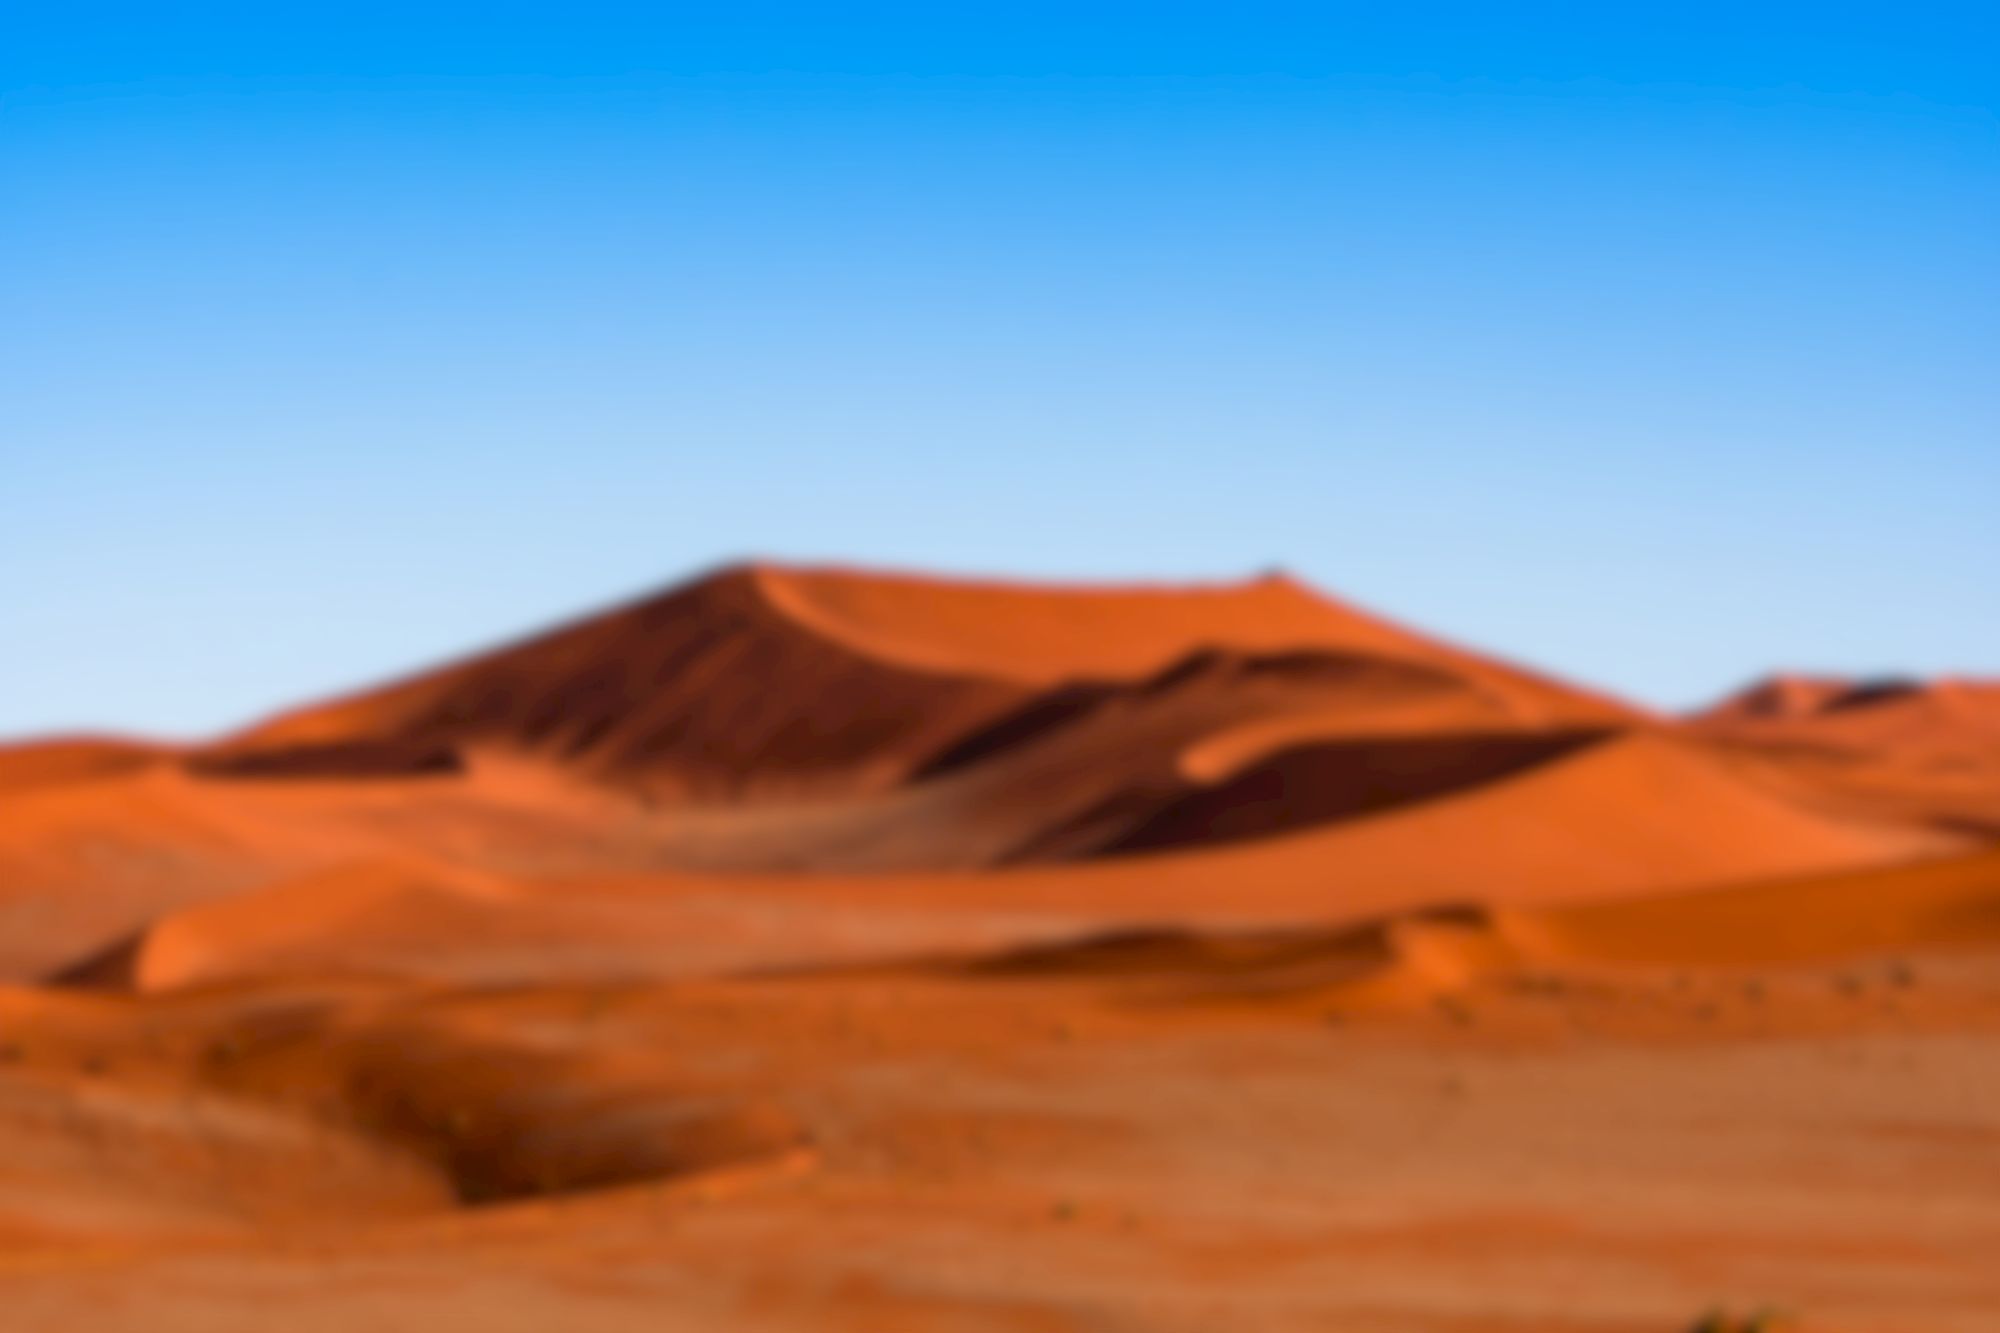 Image de fond d'un désert africain Rayuwa Chandji, votre expatriation réussie par Thierry Moal